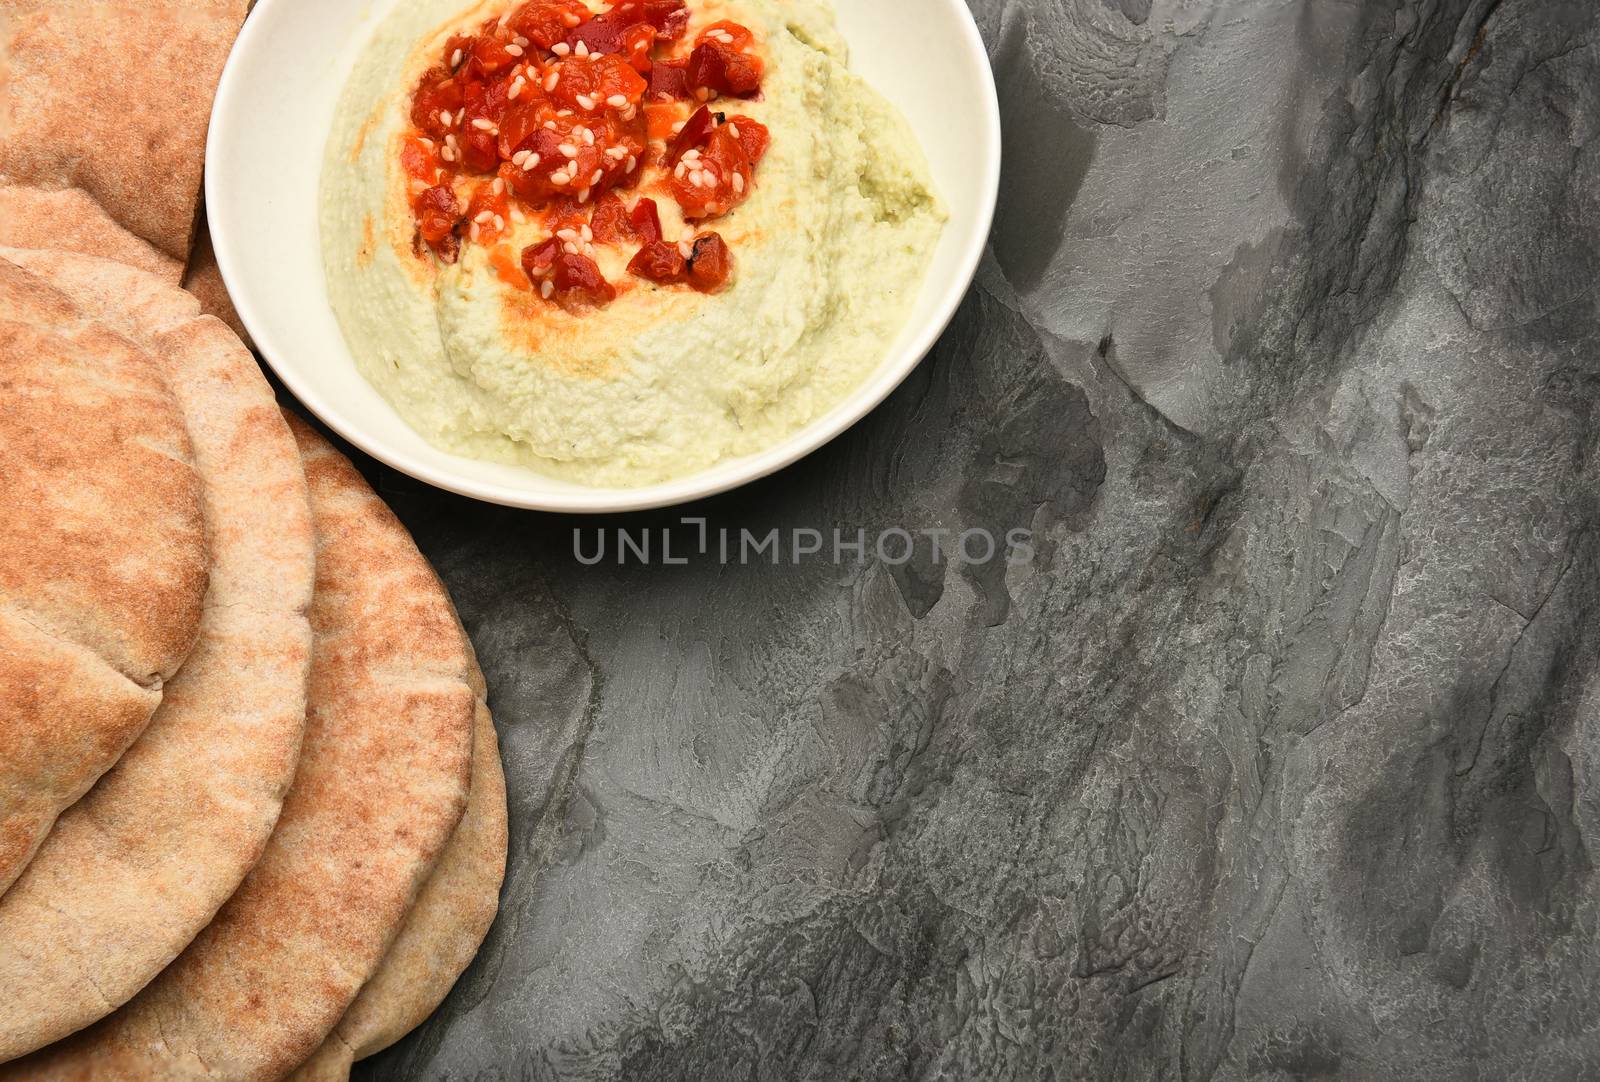 Edamame Hummus and Pita Bread by sCukrov